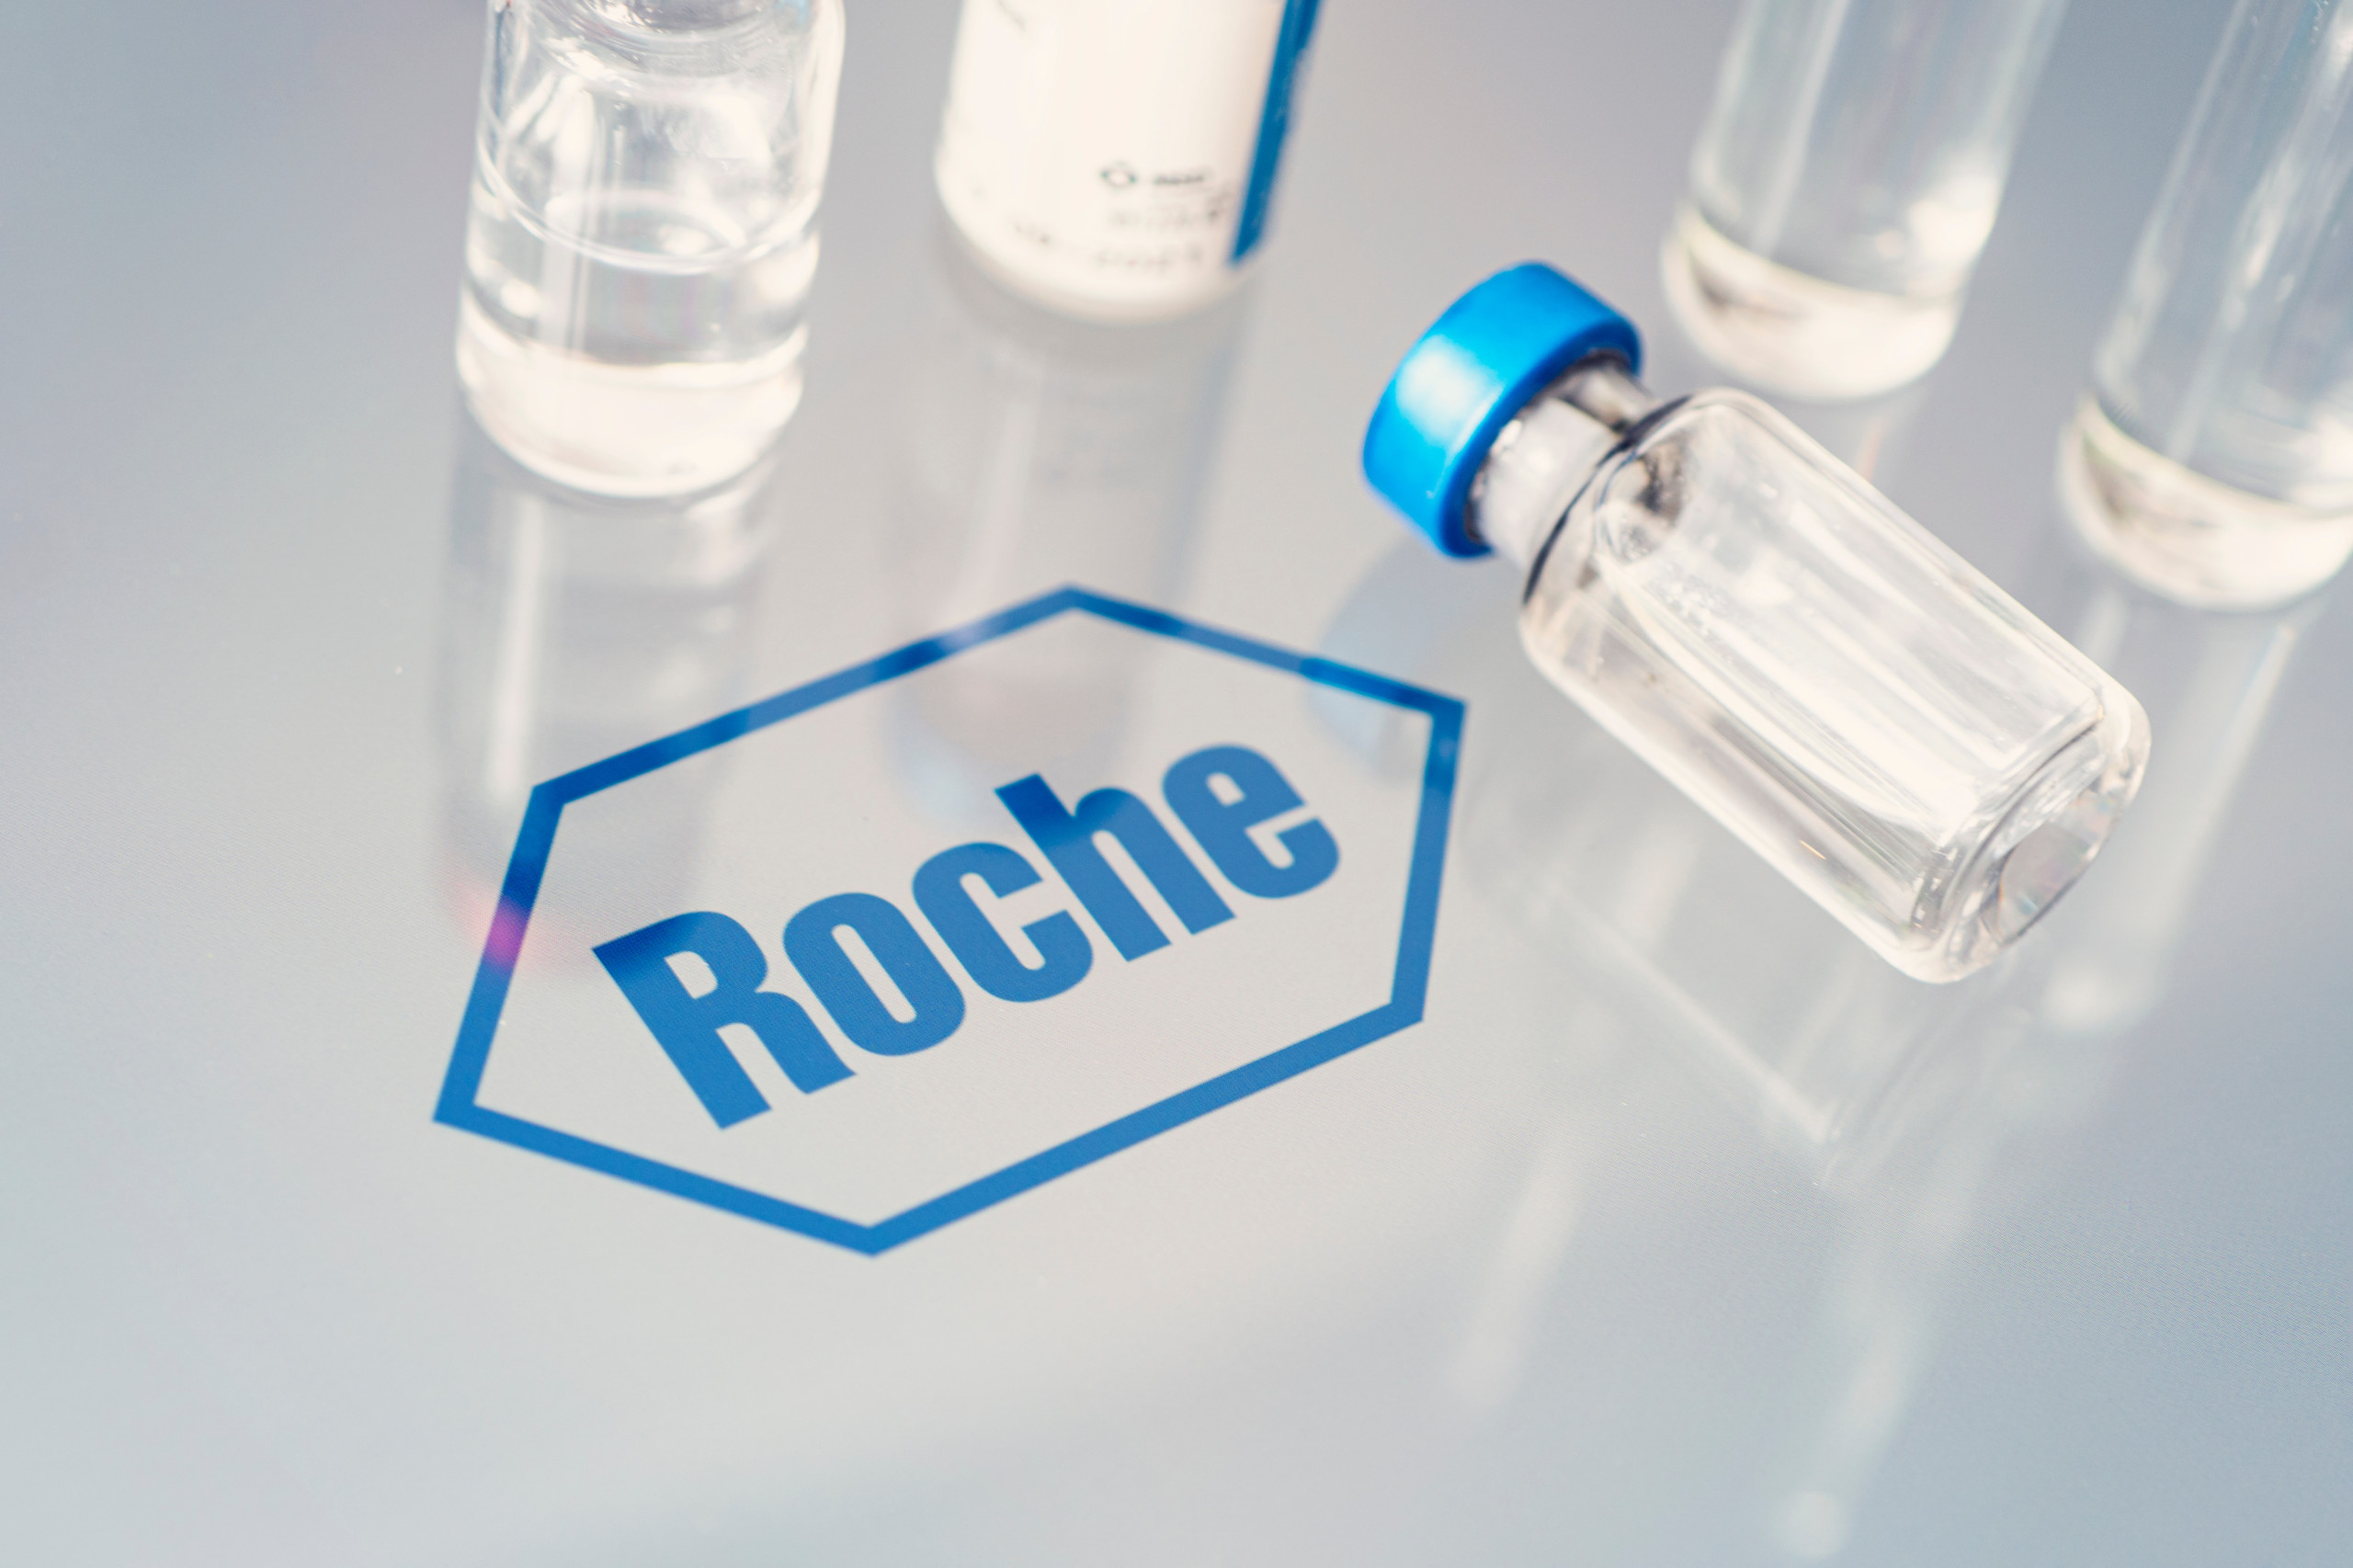 Roche enttäuscht beim Absatz neuer Medikamente, die Hoffnung liegt nun auf Alzheimerstudien